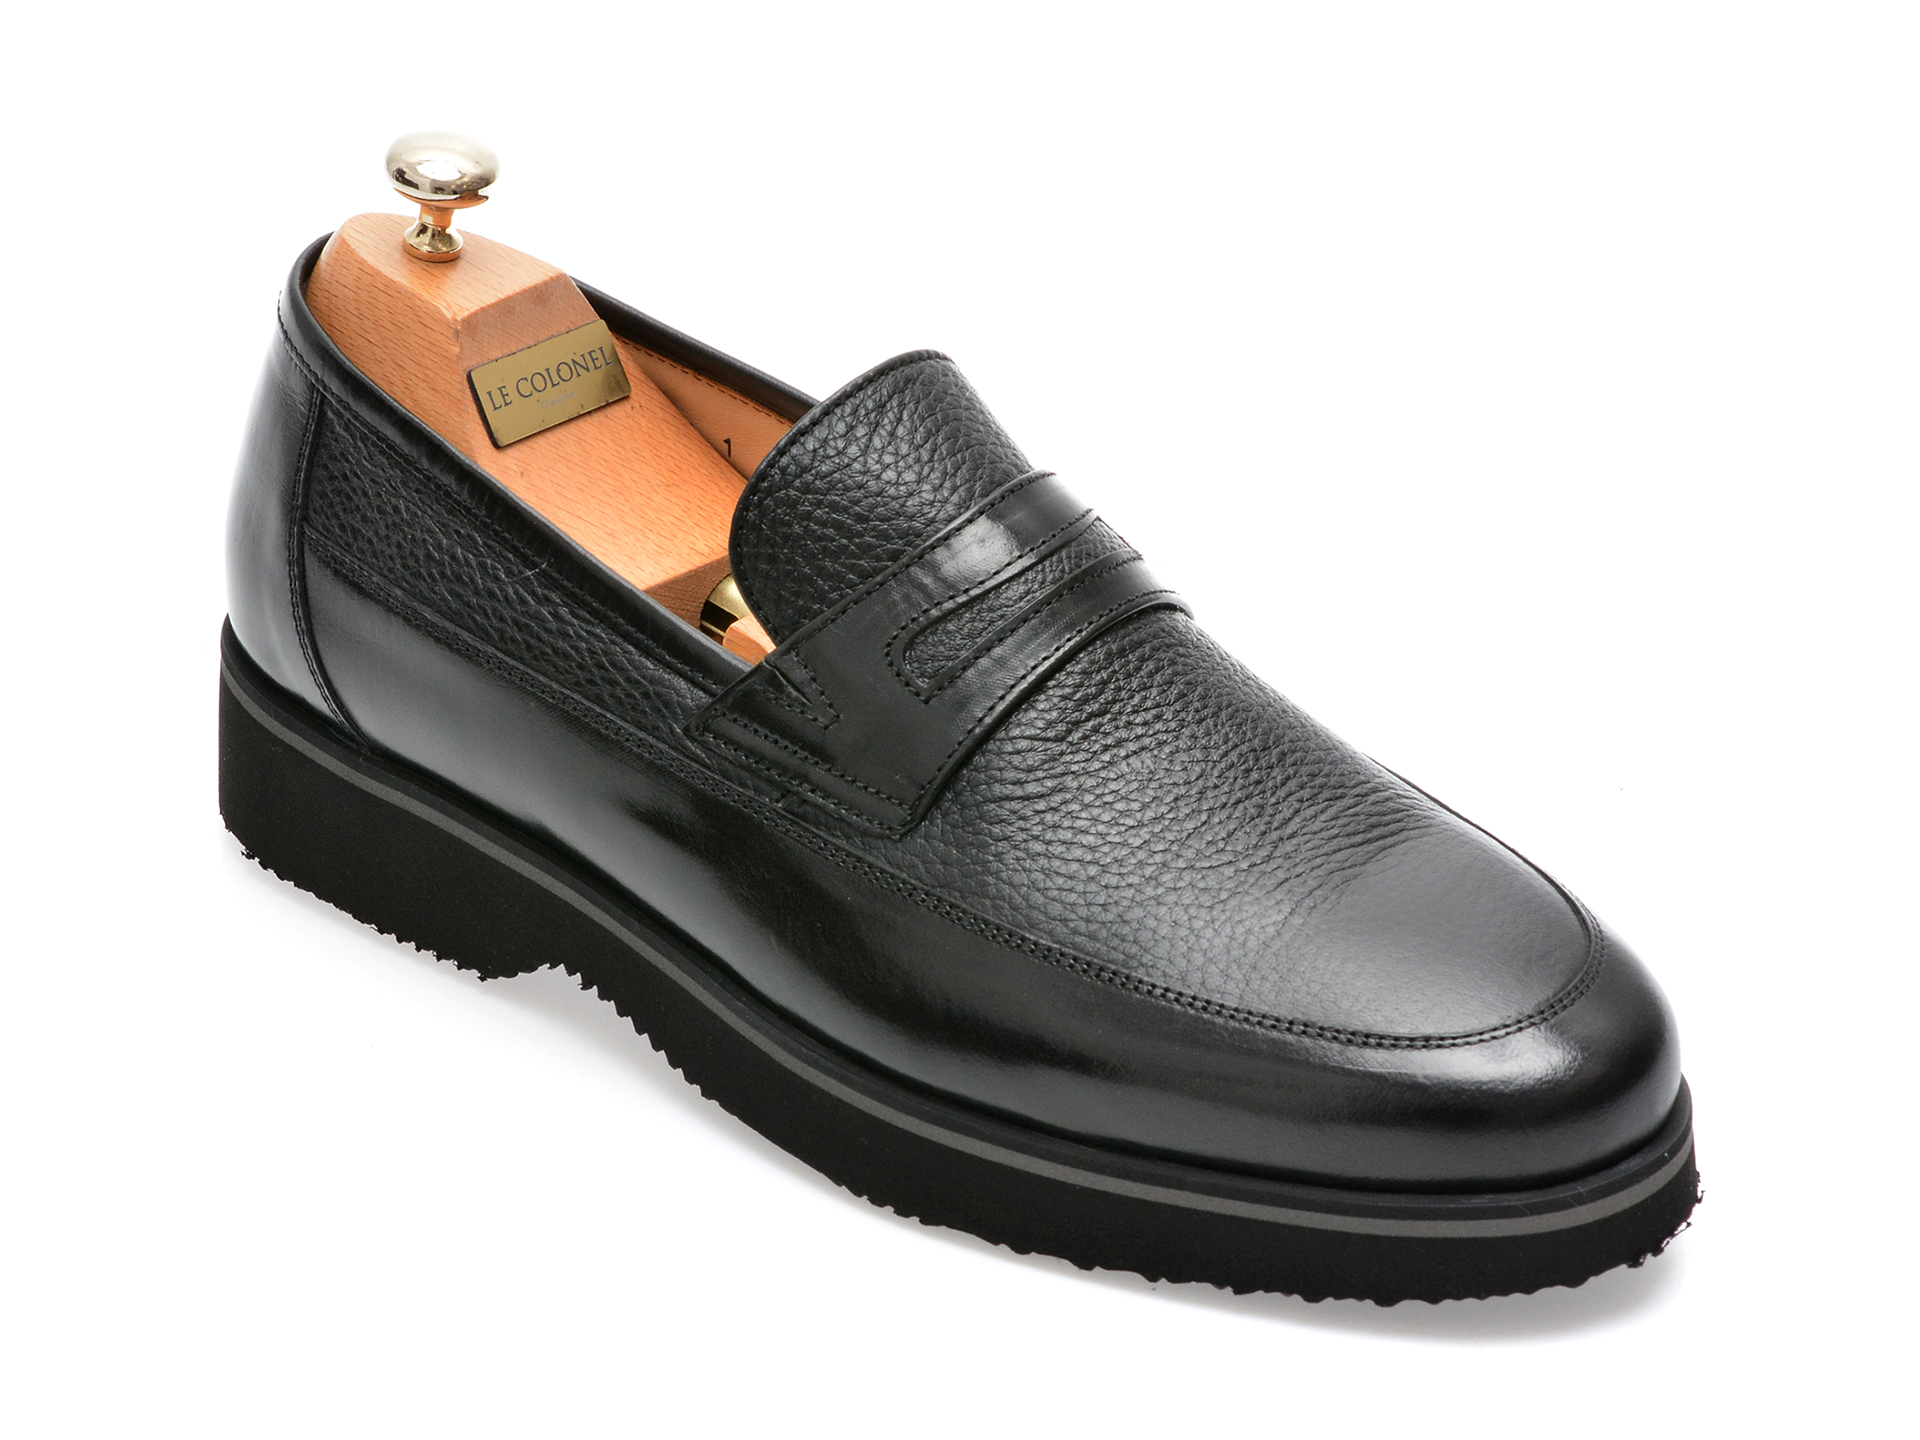 Pantofi LE COLONEL negri, 66101, din piele naturala barbati 2023-03-21